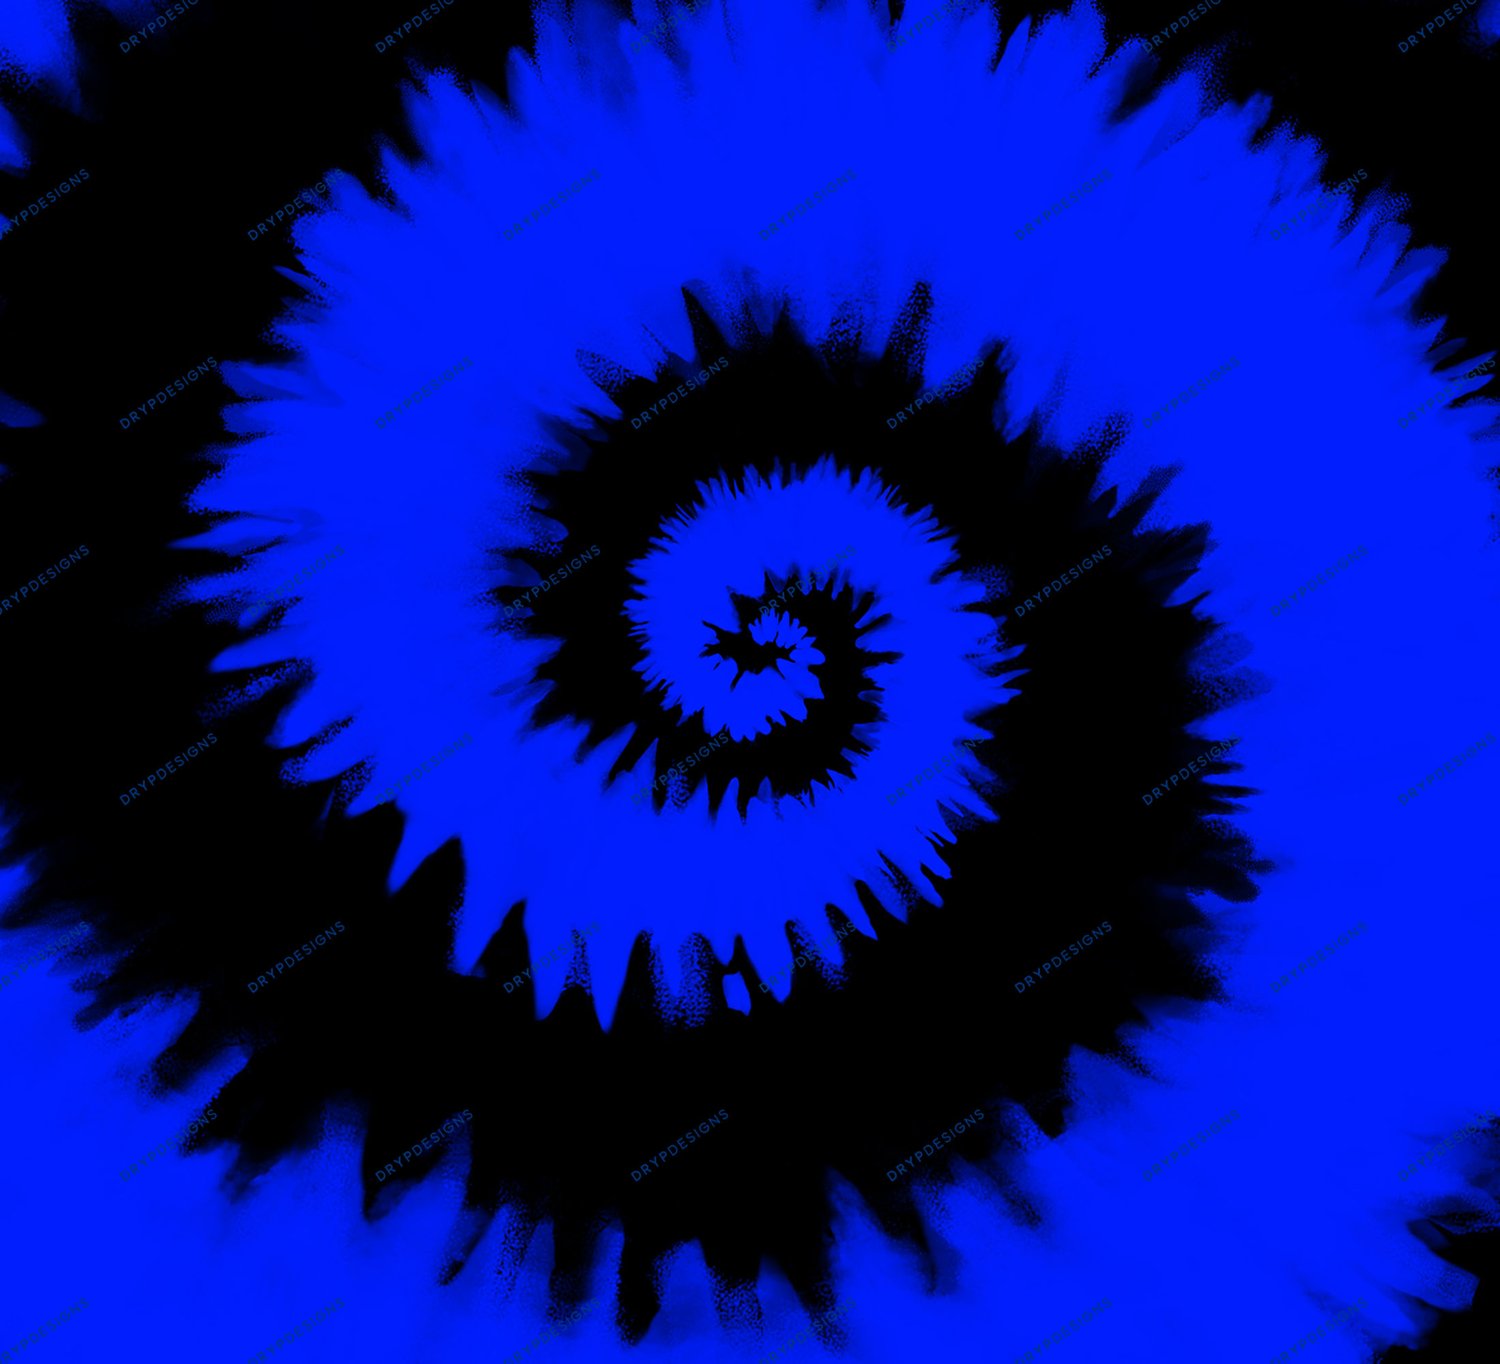 Được tạo nên từ sự kết hợp giữa màu đen và xanh, Black + Blue Tiedye Swirl Digital Background đem lại cho bạn một không gian đầy sự phóng khoáng, tràn đầy sức sống. Hãy xem ngay hình ảnh liên quan để cảm nhận được sự nổi bật, tinh tế của sản phẩm này.